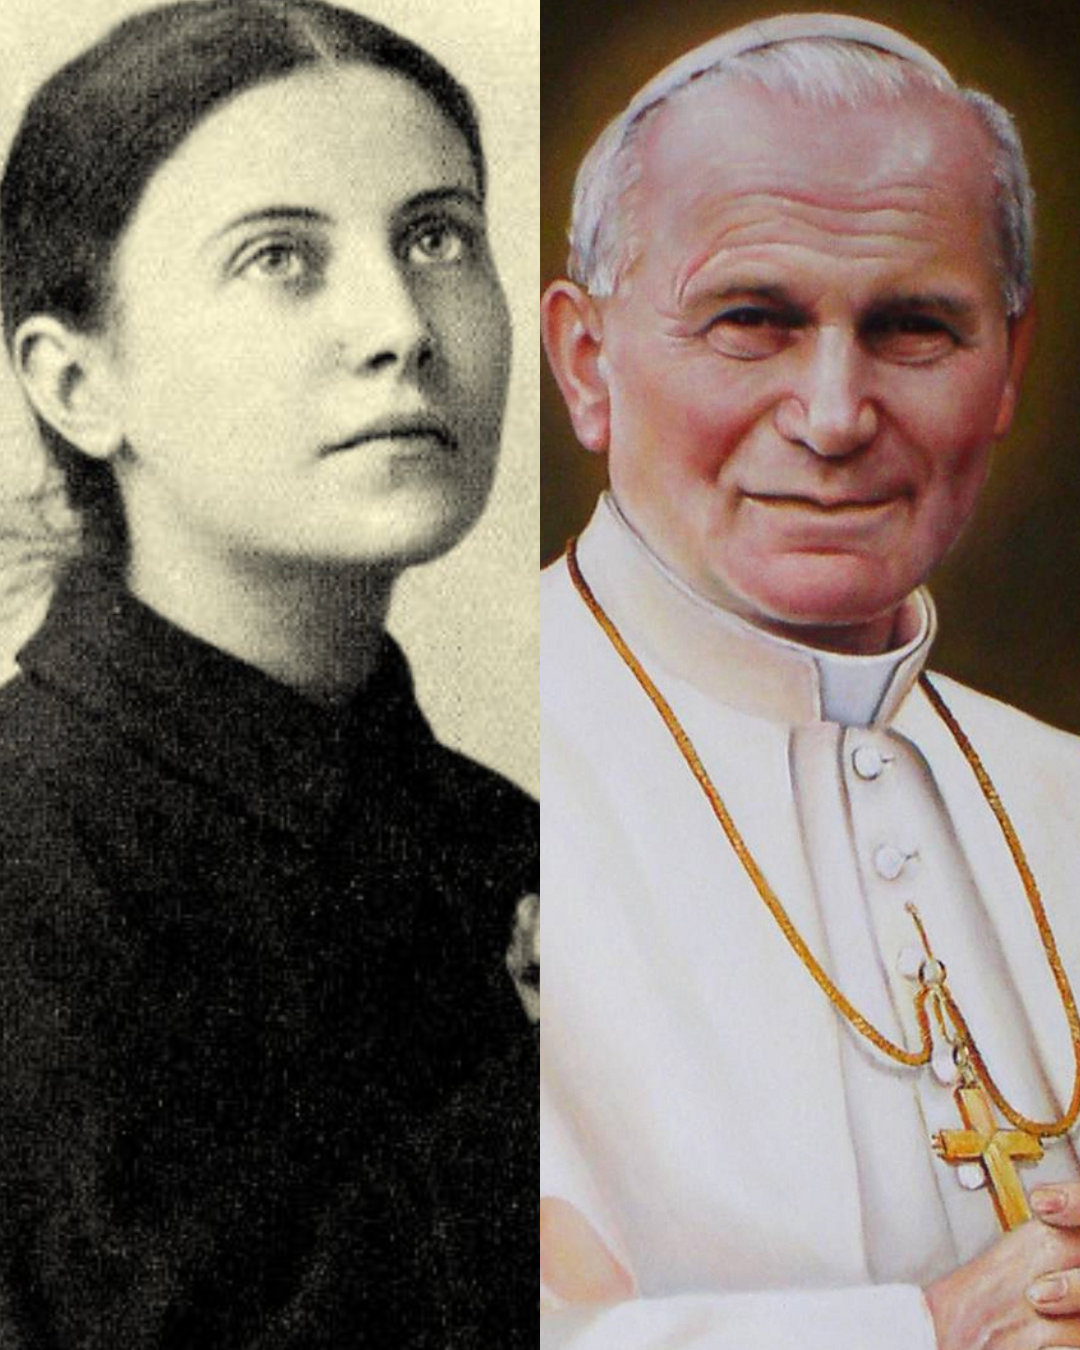 Saint Gemma Galgani, Saint John Paul II, John Paul II, who is saint john paul ii, jp2, saint quotes, suffering